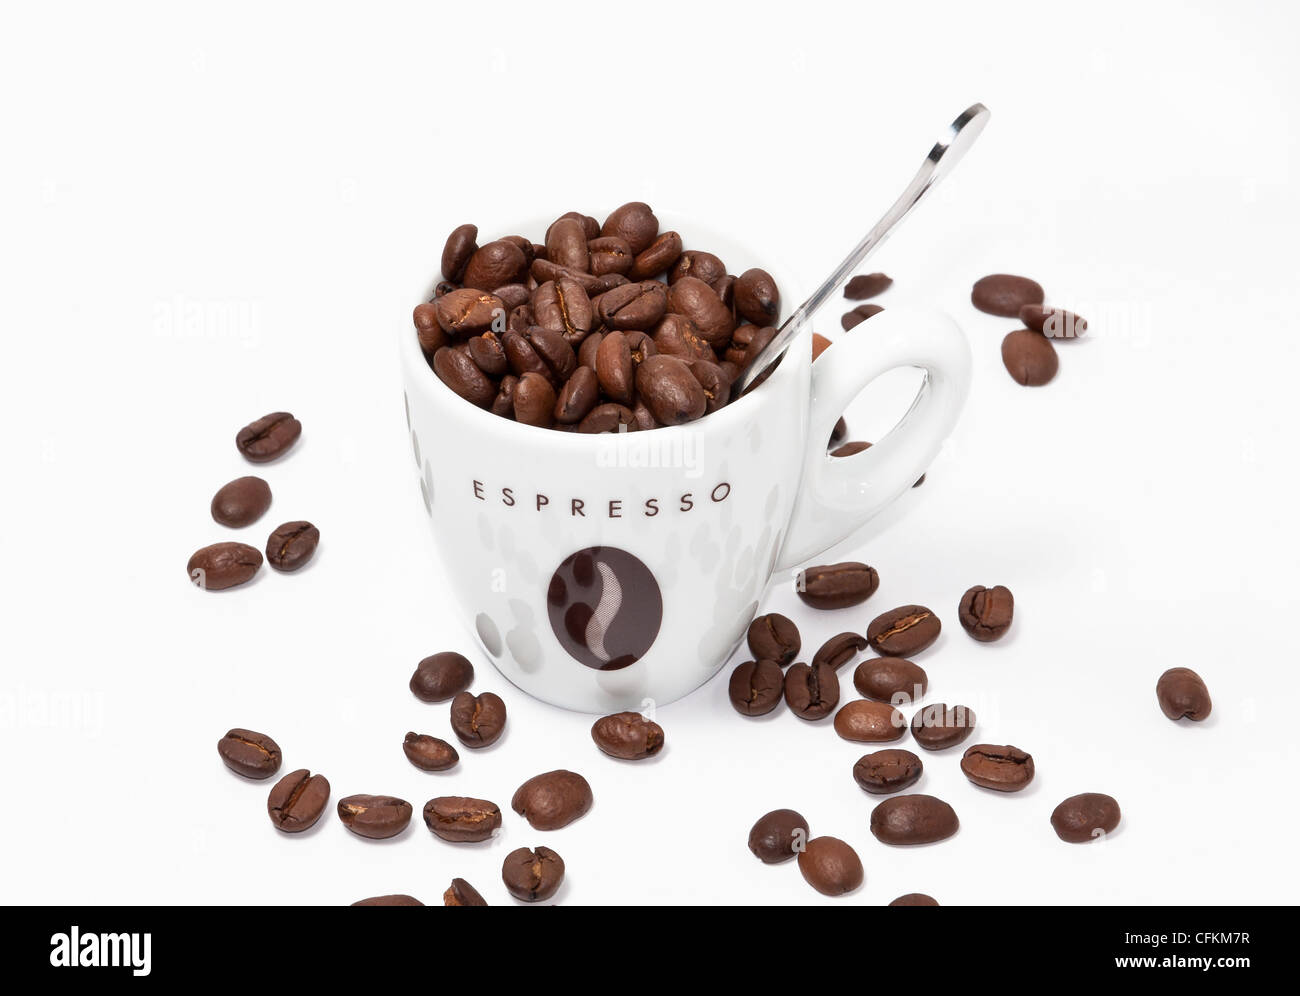 Espressotasse voll Kaffee Bohnen mit einem Löffel auf weißem Hintergrund. Stockfoto